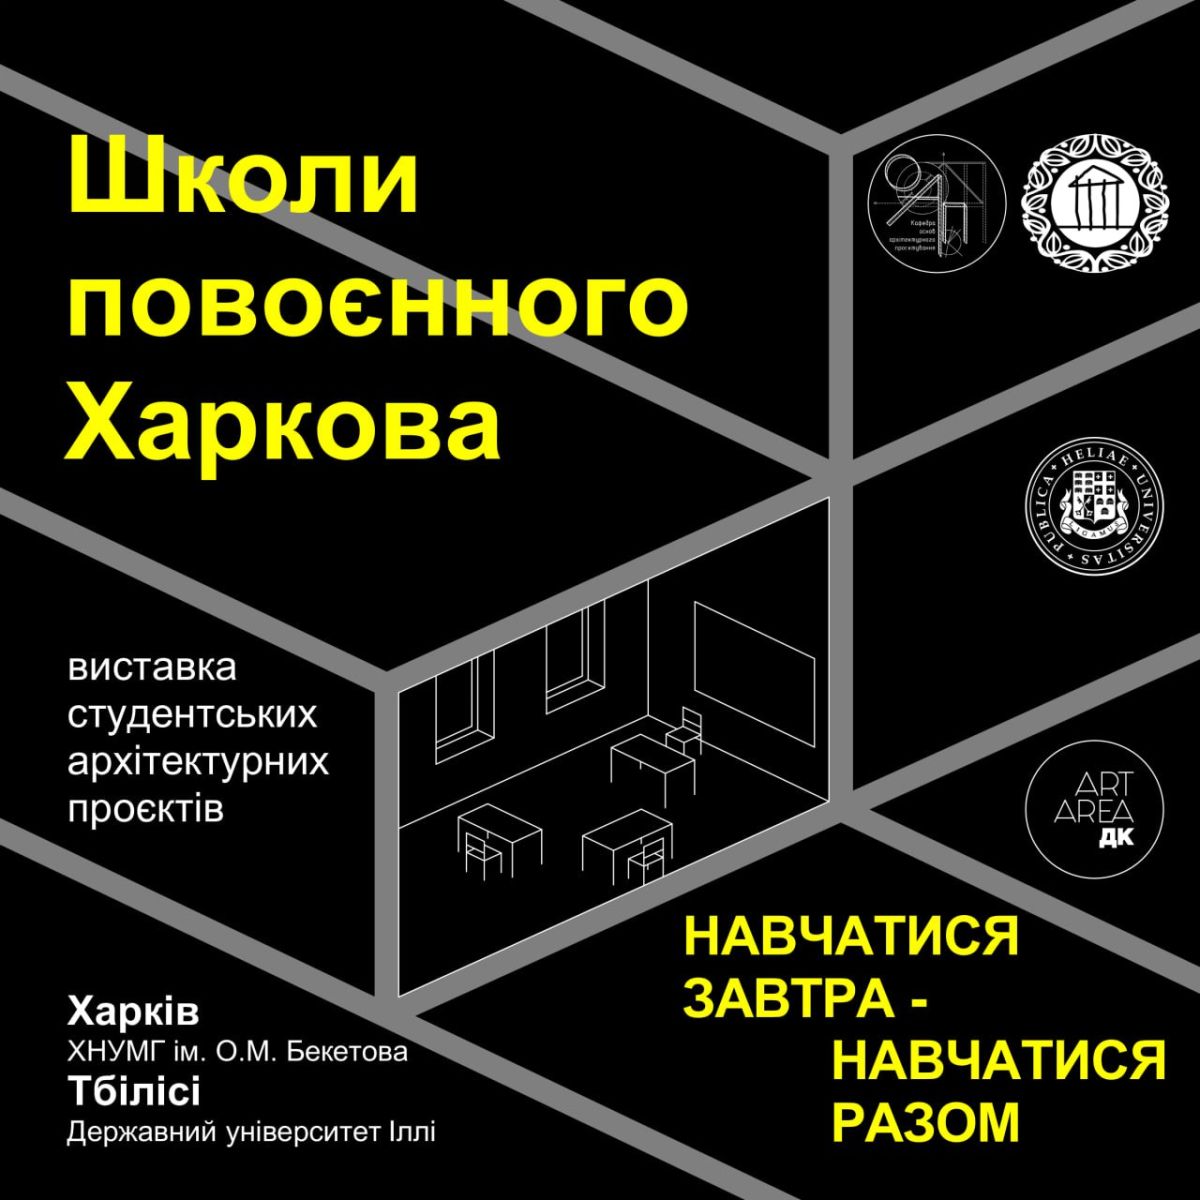 У Харкові відкриється виставка студентських архітектурних проєктів Школи повоєнного Харкова